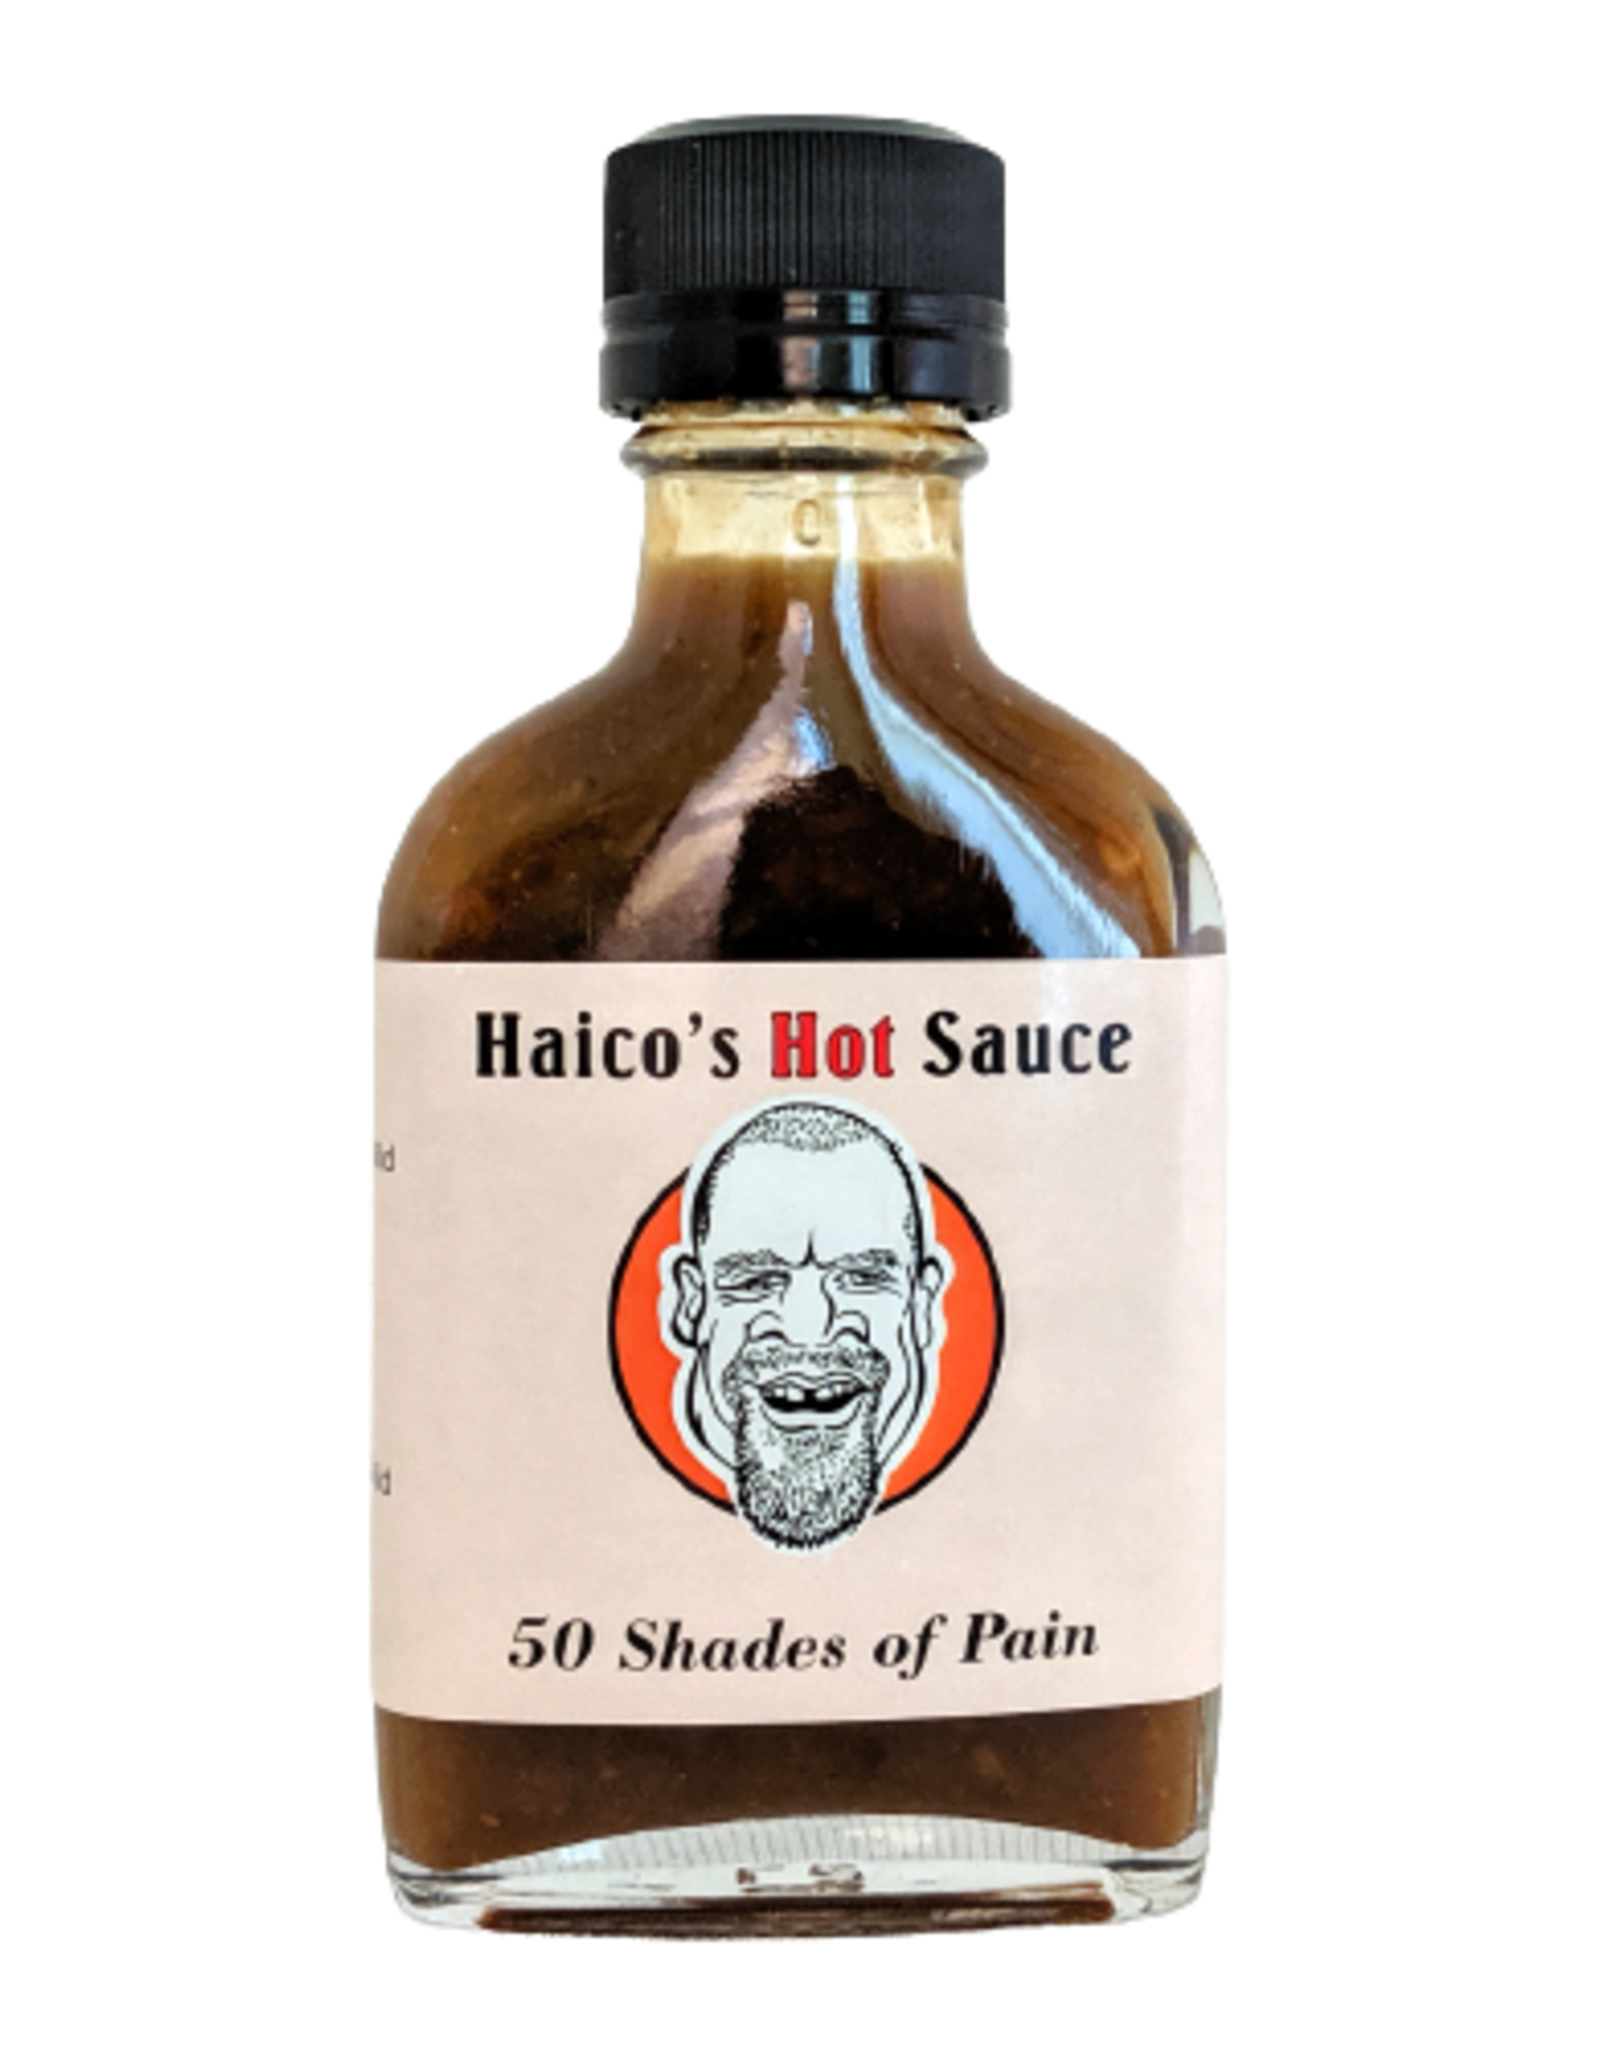 50 Shades of Pain Haico